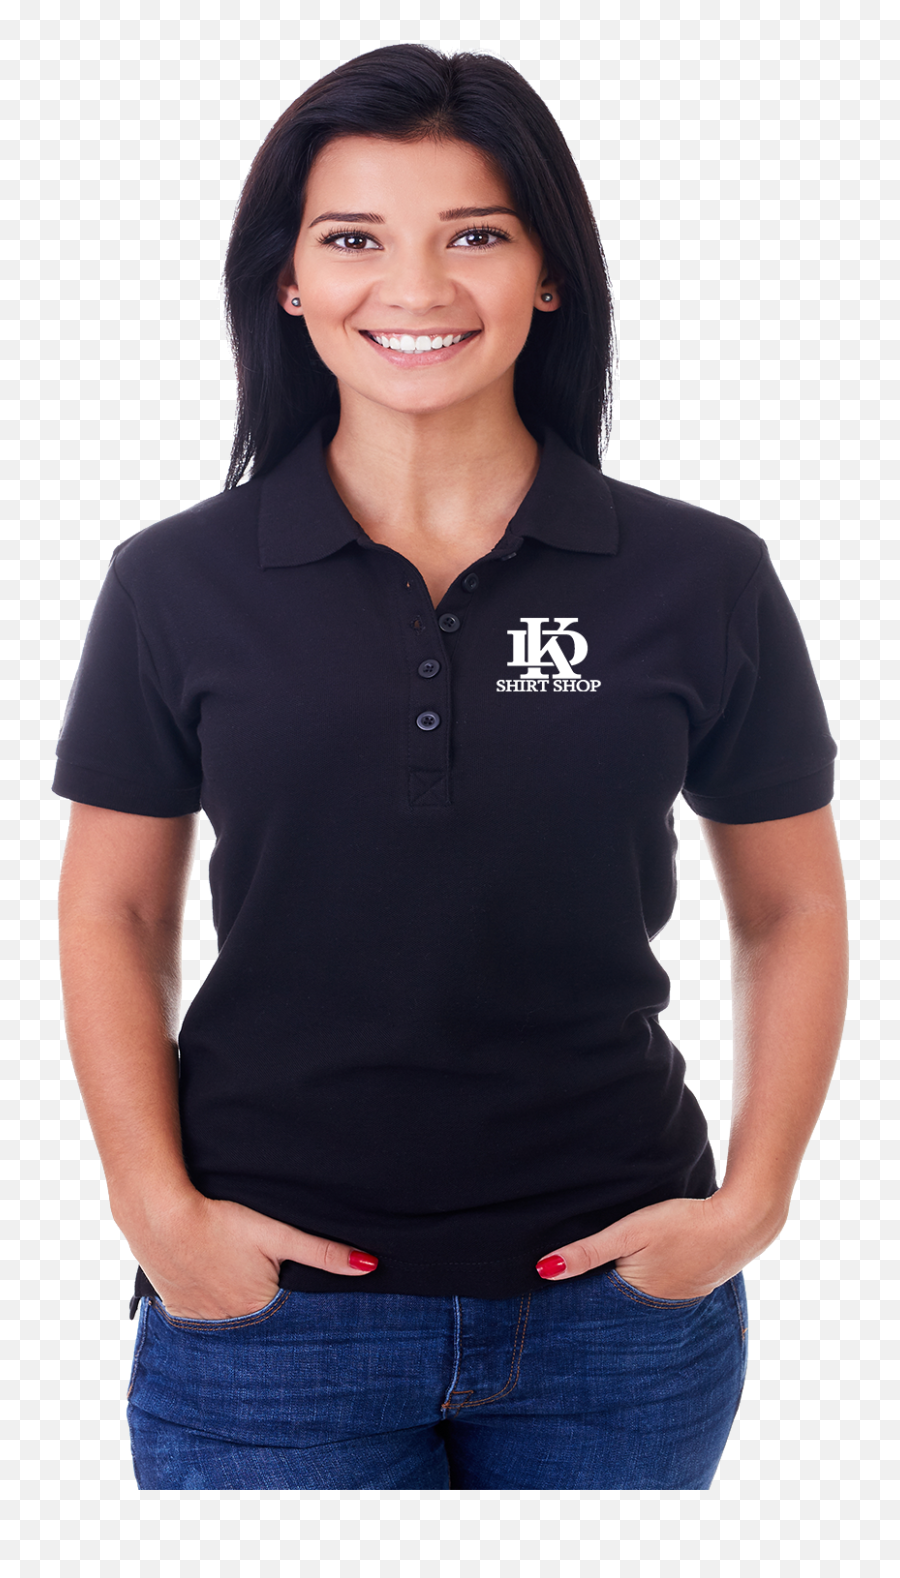 Bus Women Polo Kd Shirt Shop Logopng 1500x 1000 - Polo Shirt,Polo Logo Png